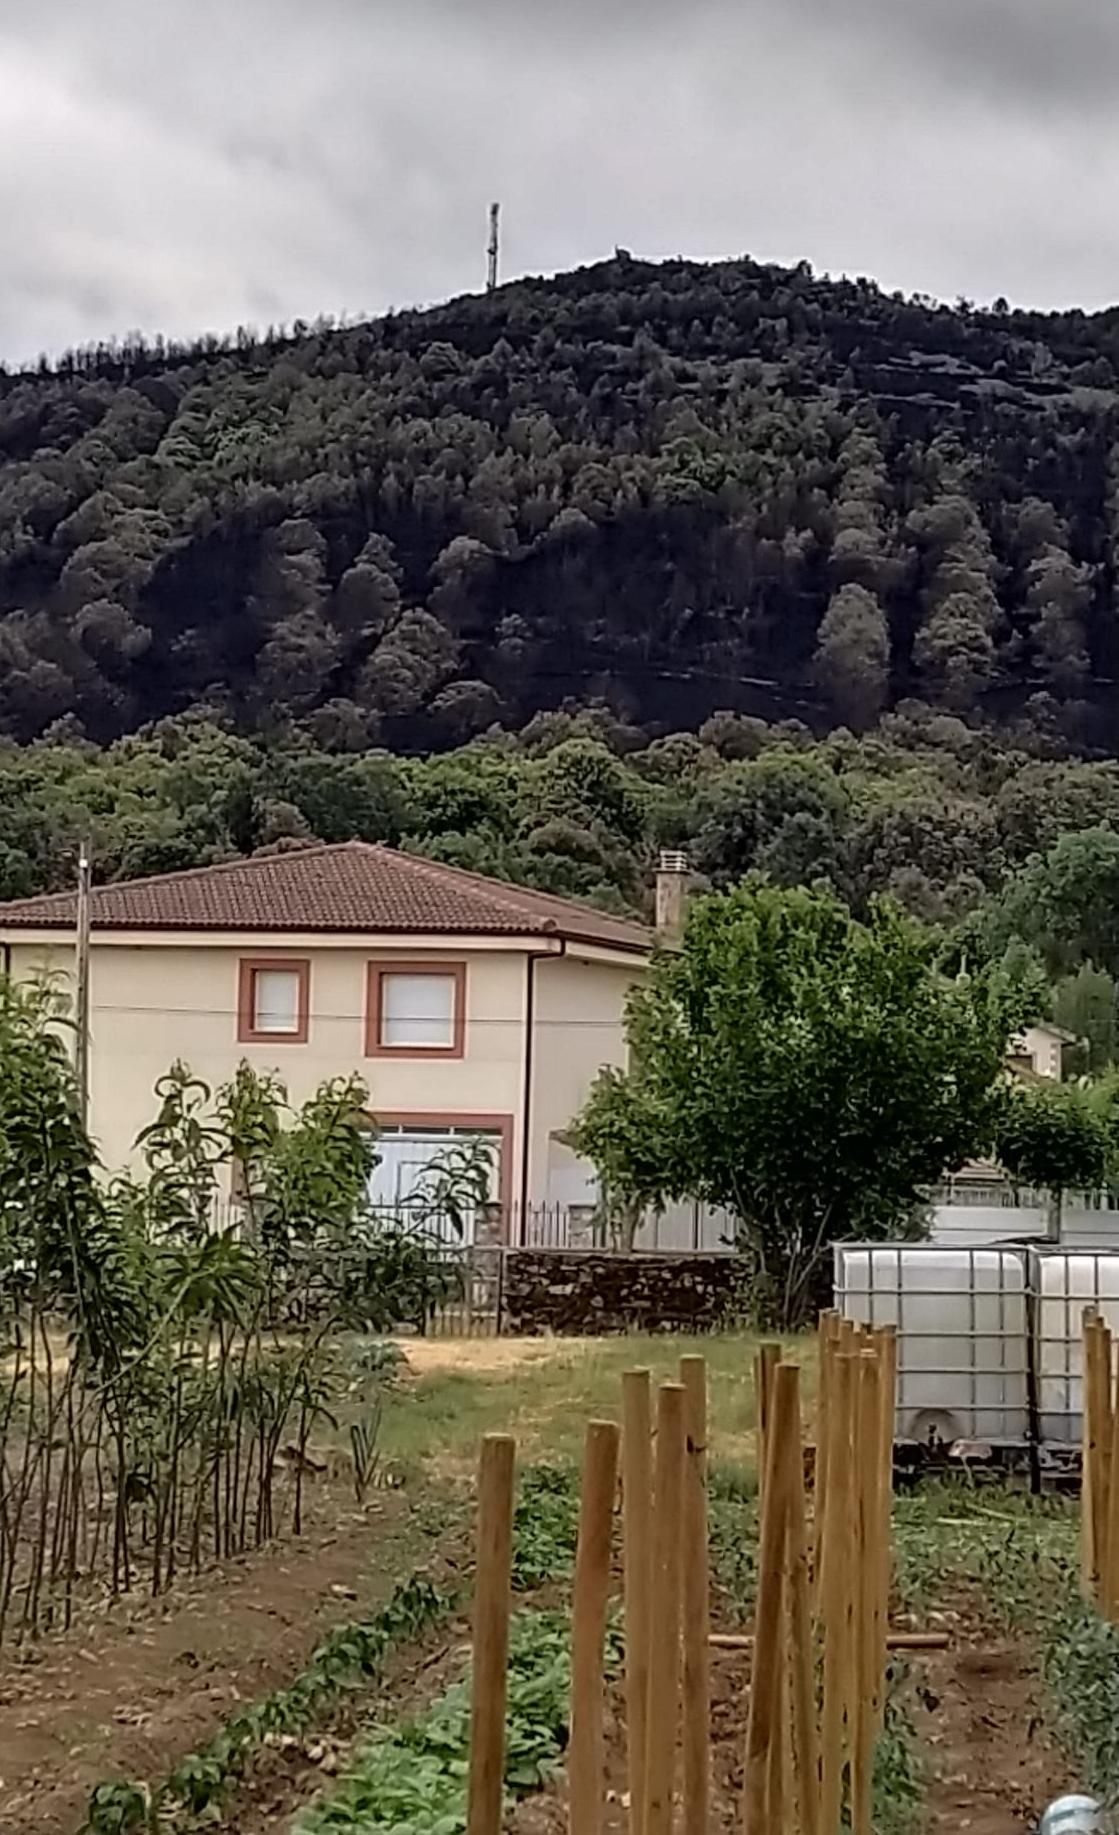 Vista del monte quemado de Ferreras desde la casa de los padres de Laura. 